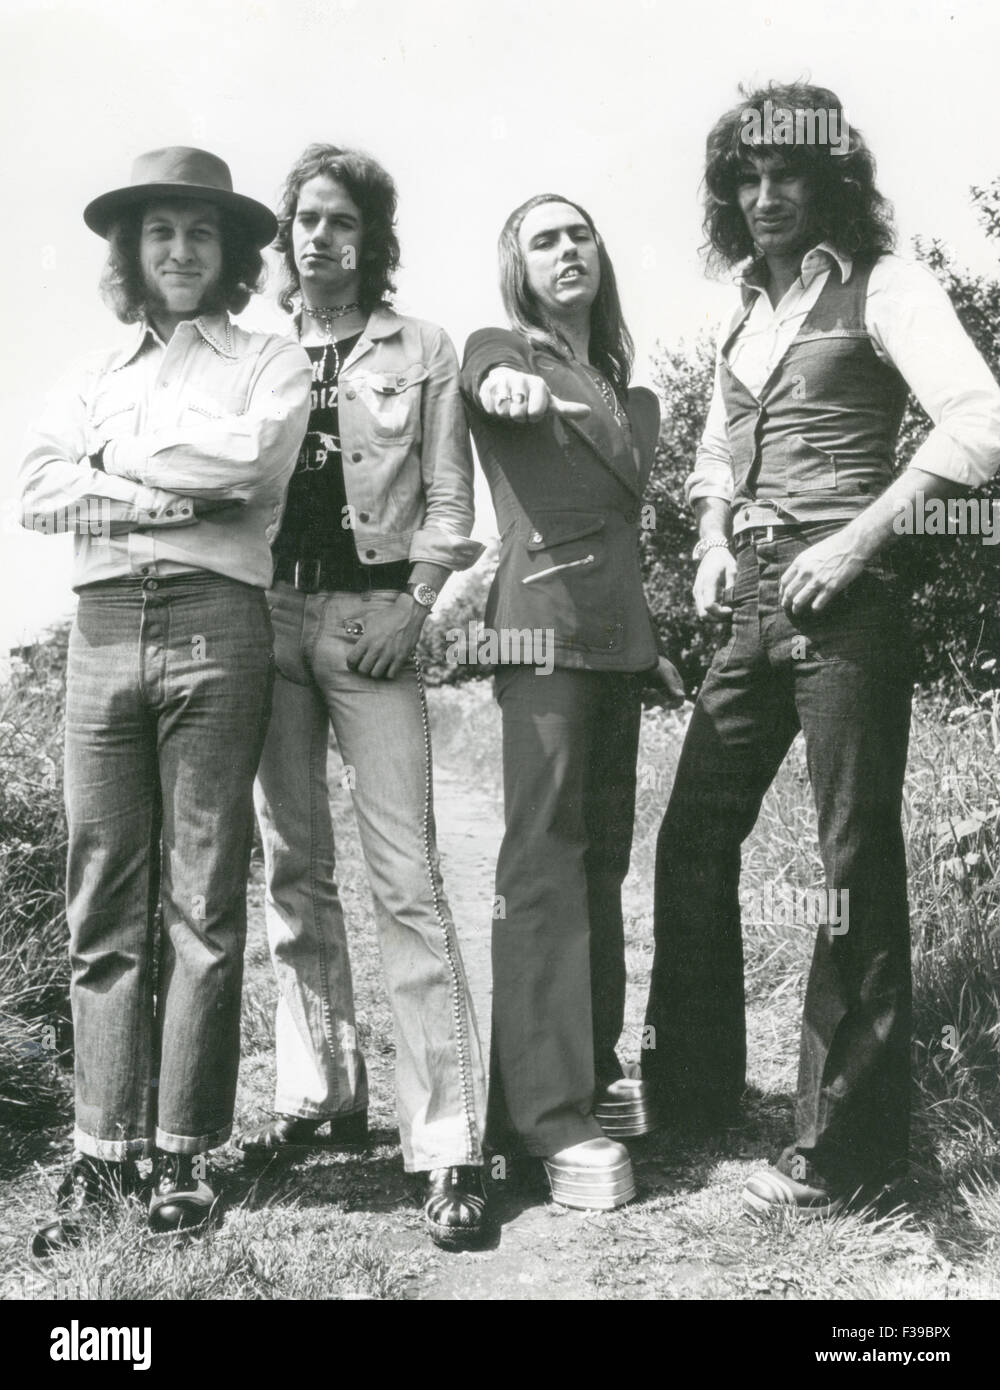 SLADE REGNO UNITO gruppo pop circa 1973. Da sinistra: Noddy titolare, Jim Lea, Dave Hill, Don Powell Foto Stock